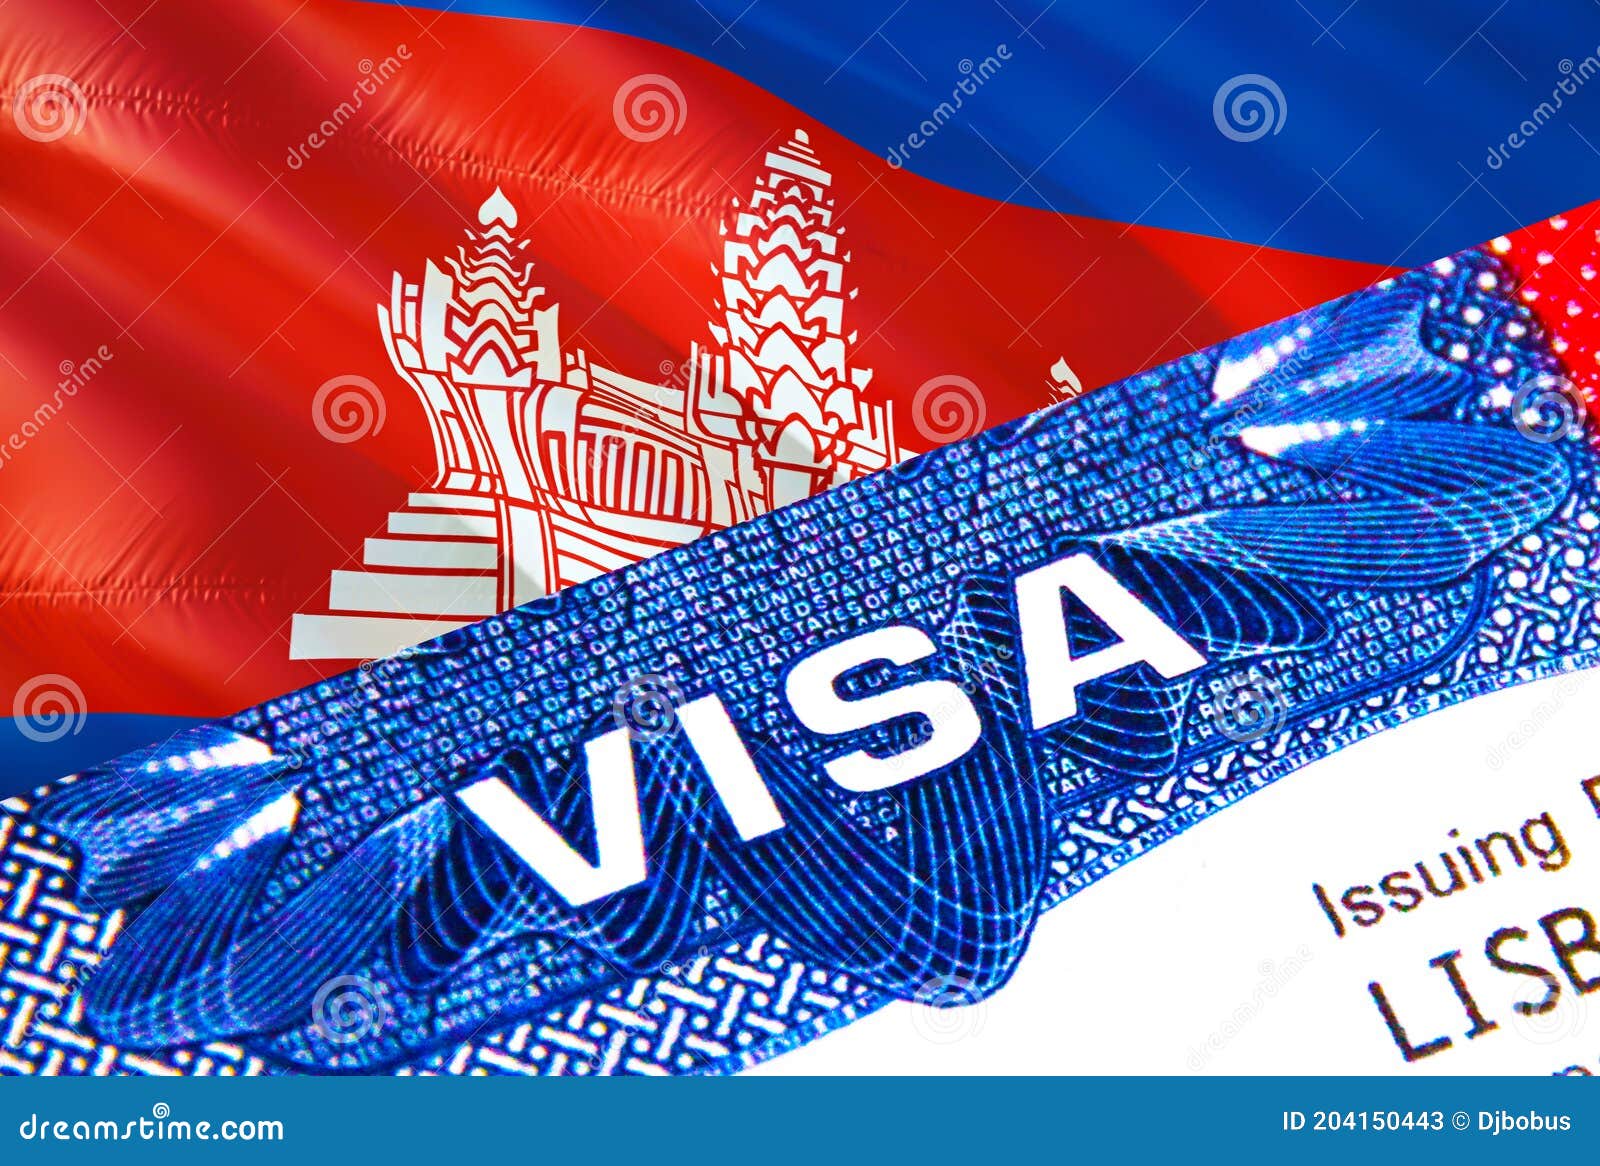 柬埔寨|柬单网|html{font-size:375%} 旅游签转商务签本人无需出境欢迎咨询 - 58cammp.com